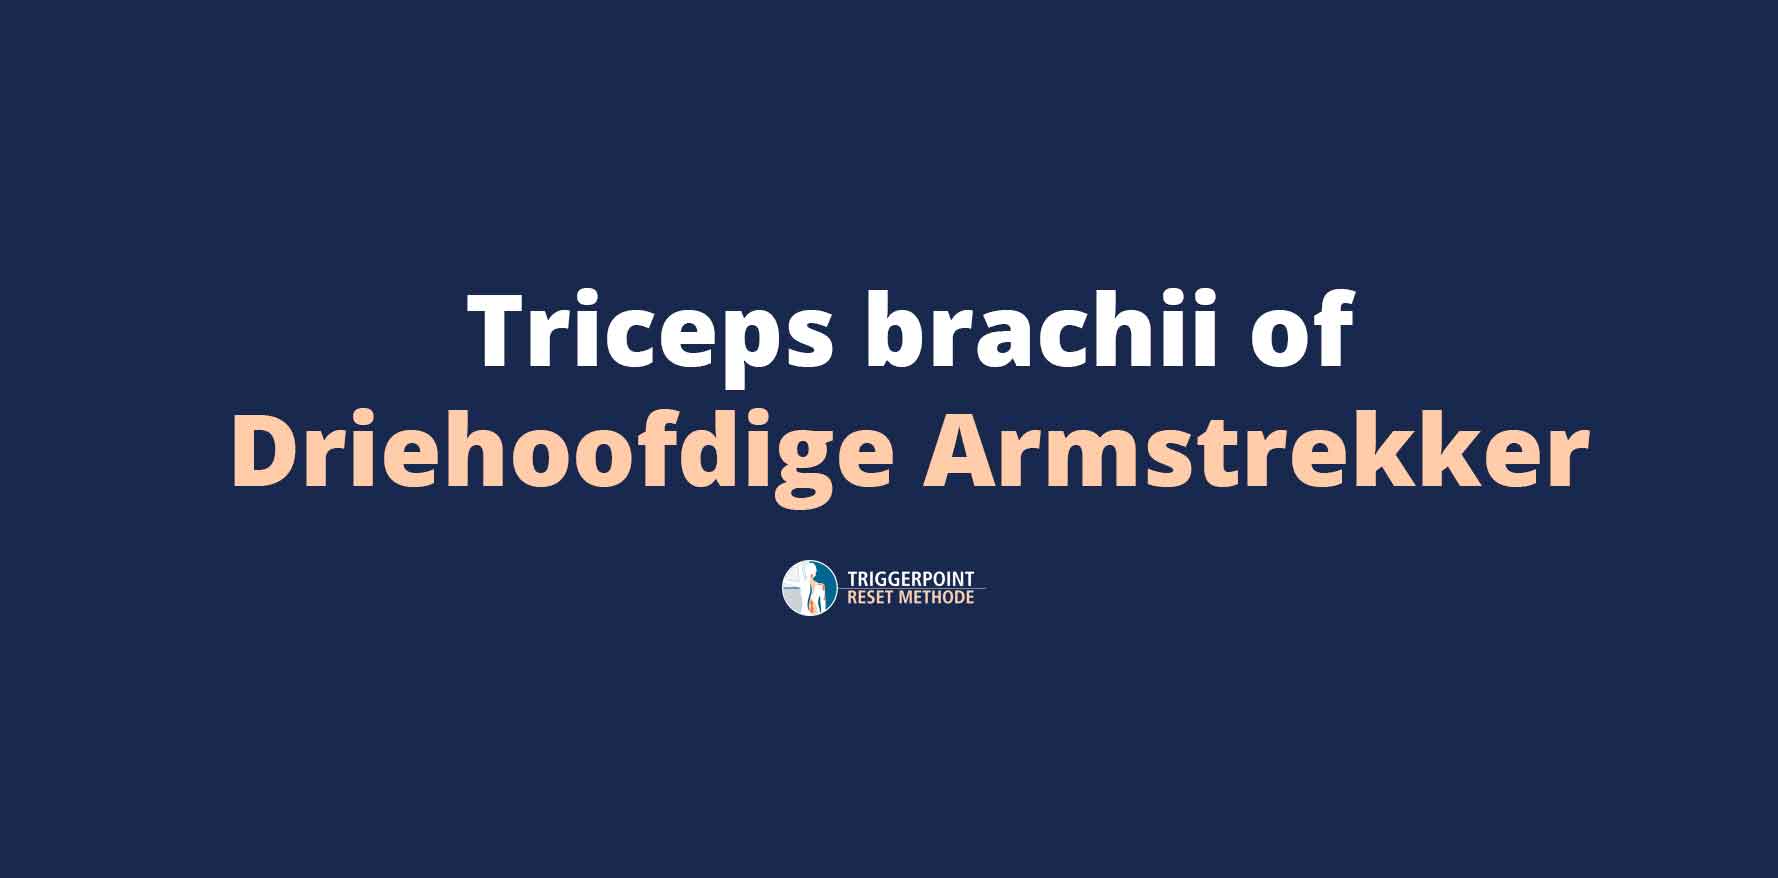 Triceps brachii of Driehoofdige Armstrekker